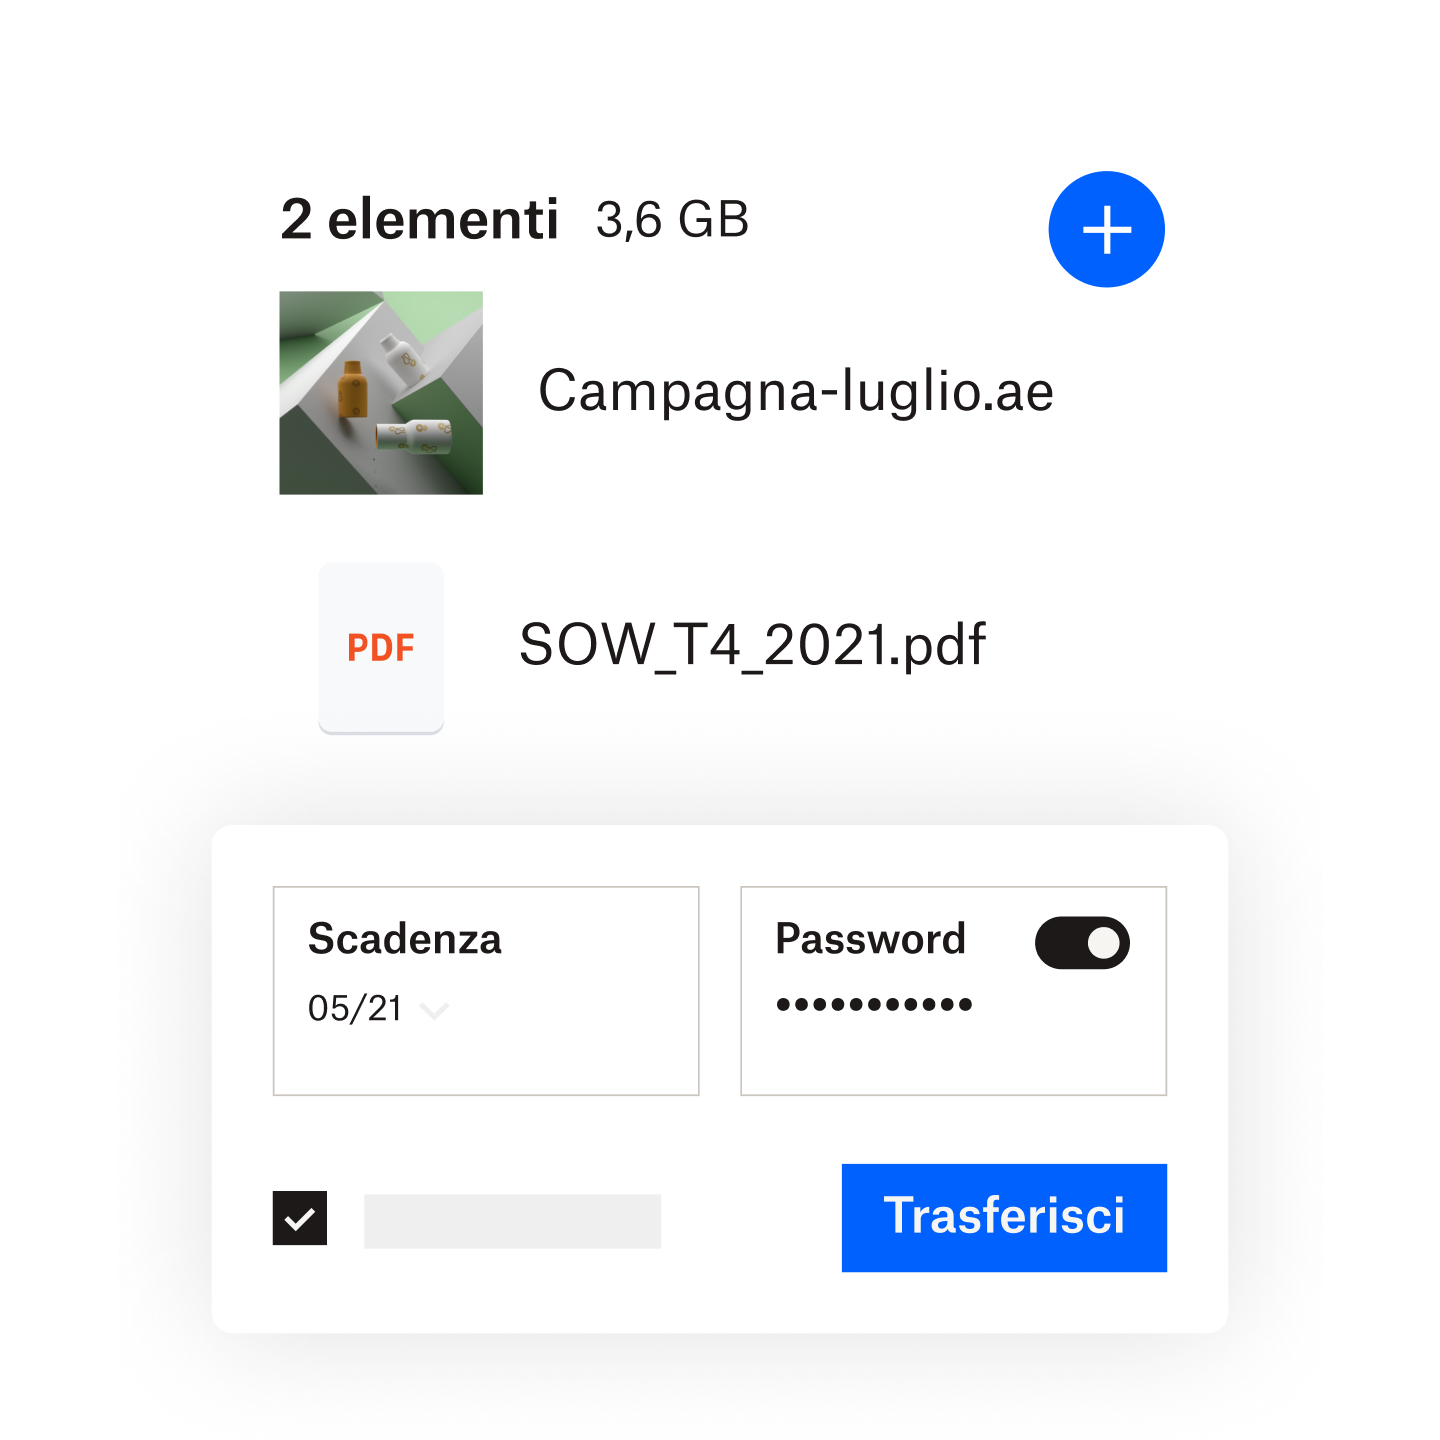 Un utente che aggiunge una password e una data di scadenza a un file condiviso tramite Dropbox Transfer